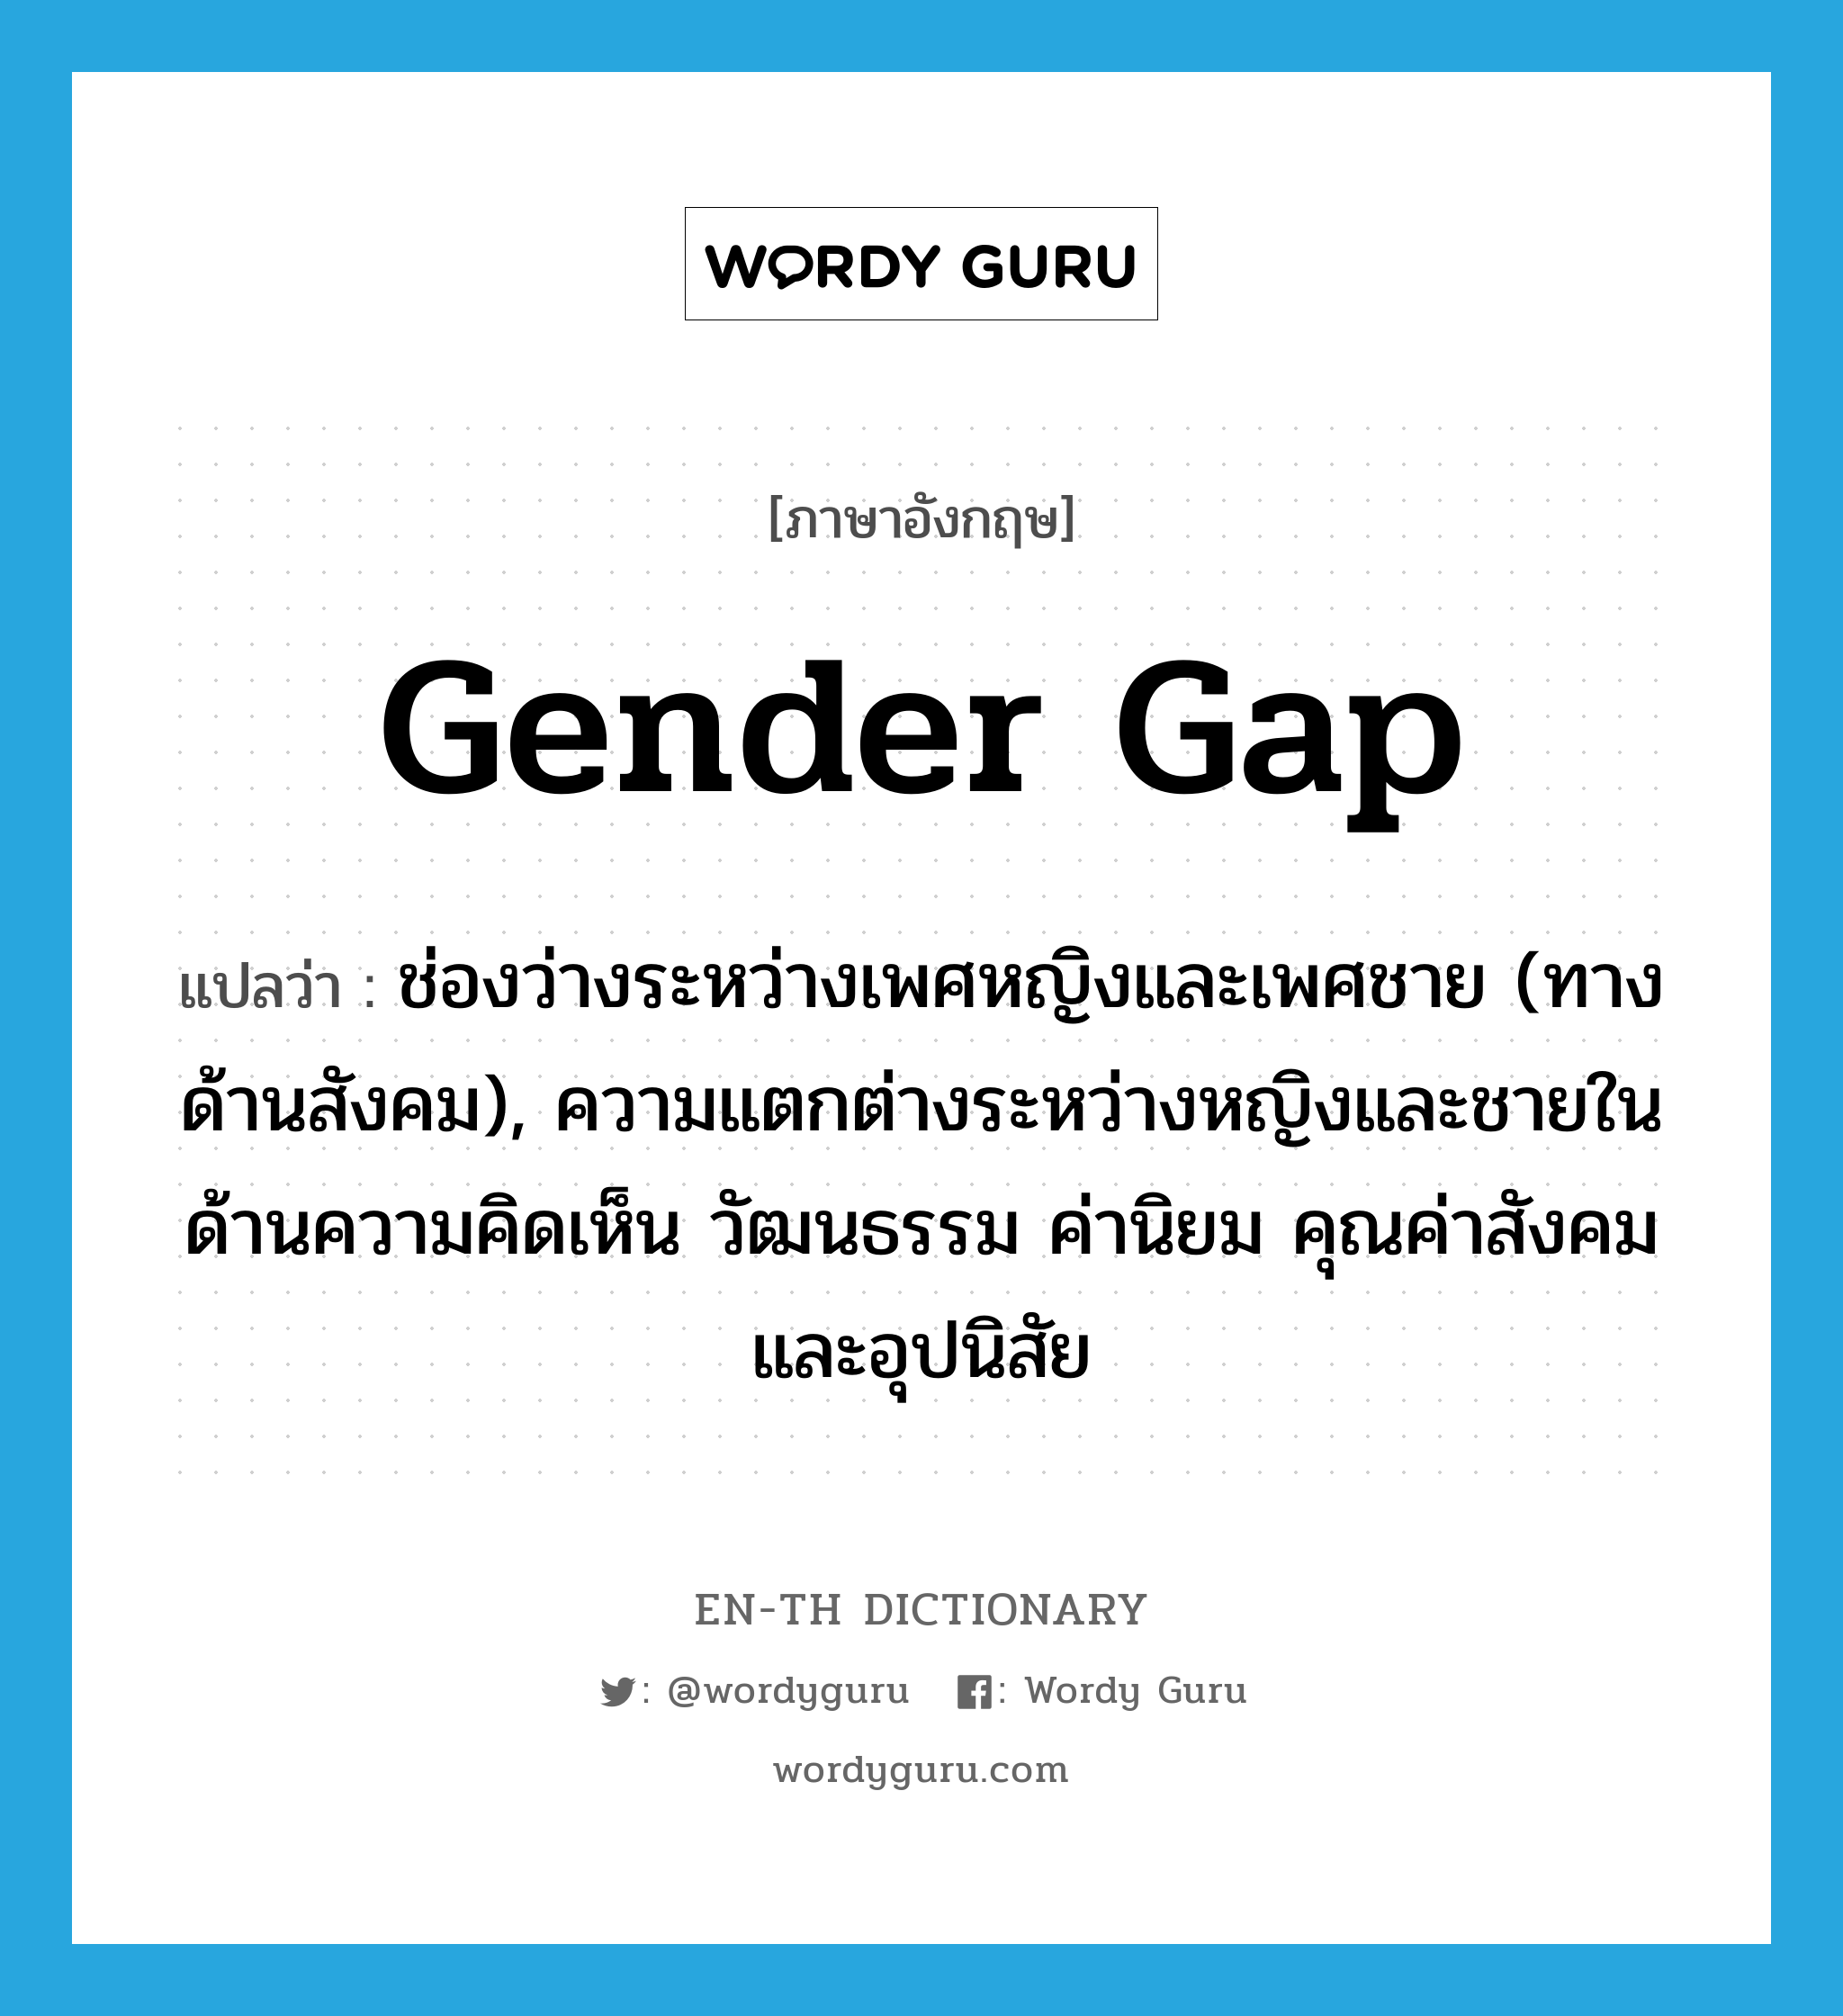 gender gap แปลว่า?, คำศัพท์ภาษาอังกฤษ gender gap แปลว่า ช่องว่างระหว่างเพศหญิงและเพศชาย (ทางด้านสังคม), ความแตกต่างระหว่างหญิงและชายในด้านความคิดเห็น วัฒนธรรม ค่านิยม คุณค่าสังคมและอุปนิสัย ประเภท N หมวด N